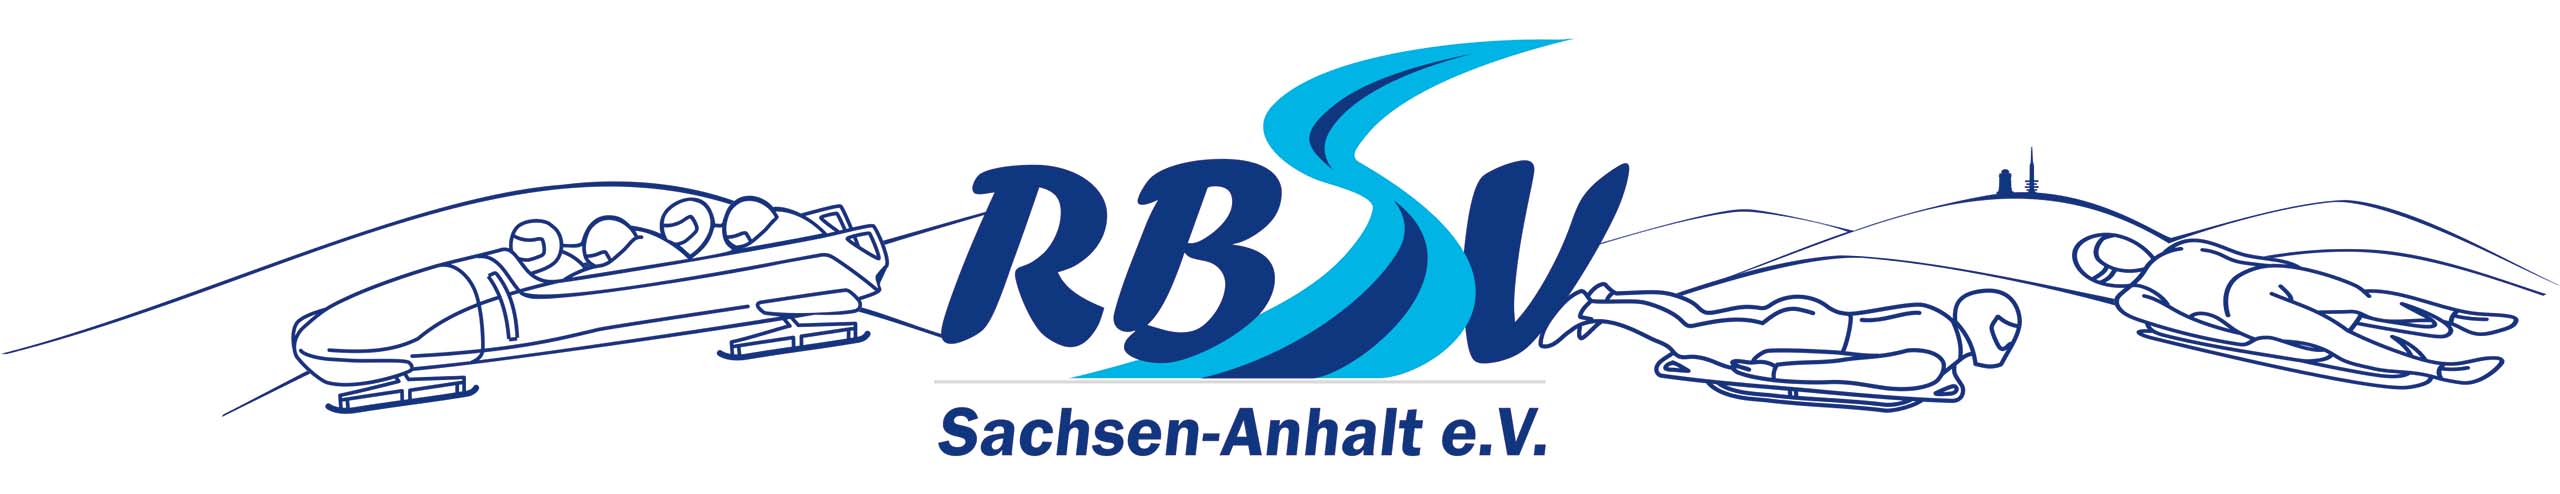 Rodel- und Bobsportverband Sachsen-Anhalt e.V.